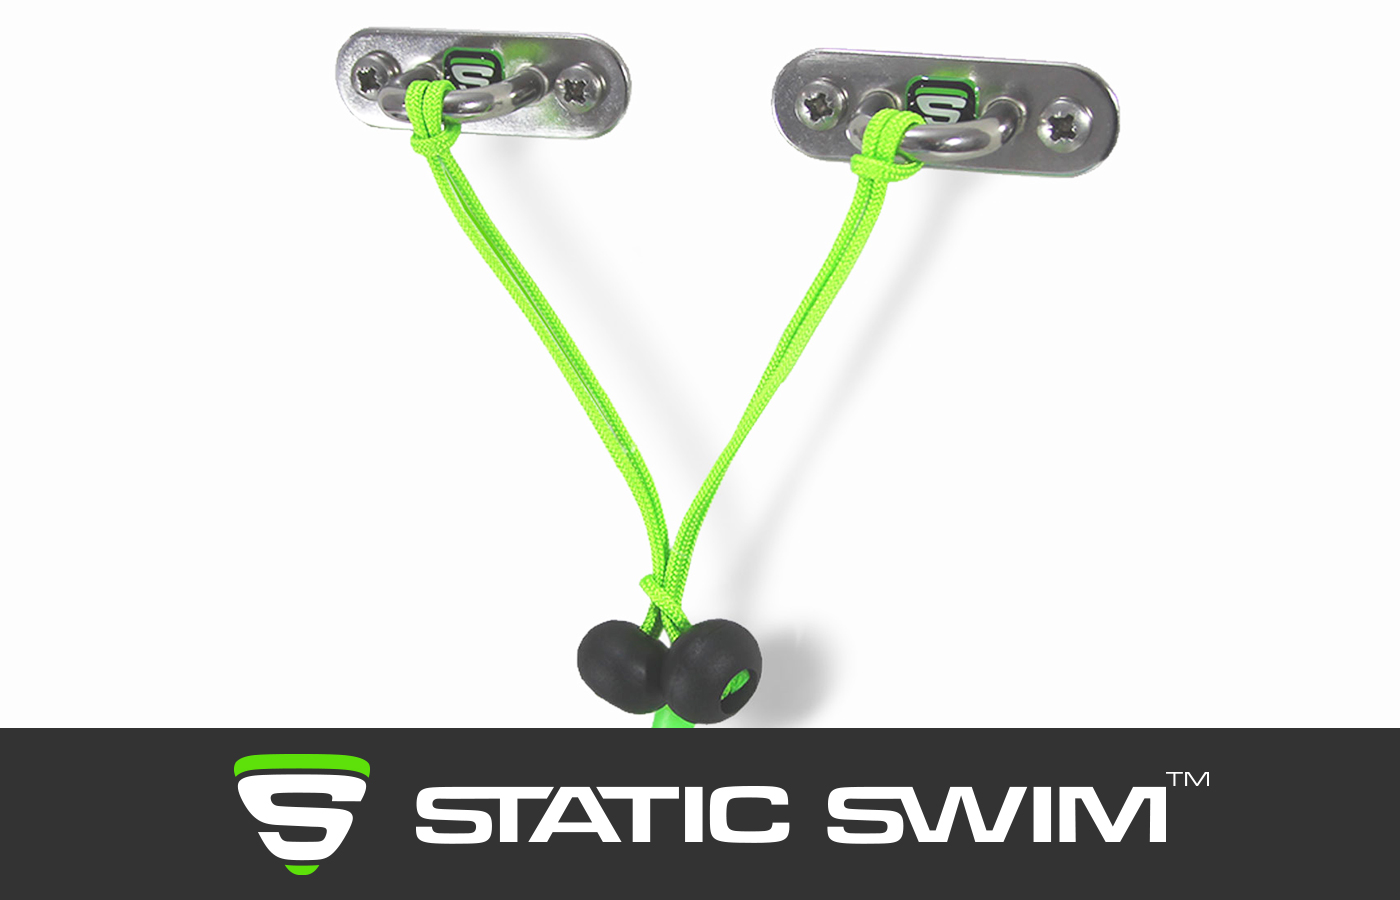 Ingénieuse, la fixation murale STATIC SWIM™ permet de fixer votre équipement sur un mur situé jusqu'à 7 m de la piscine. La longueur du cordage se règle facilement par un nœud au niveau du stopper (boule noire). L'excédent de corde est coupé.